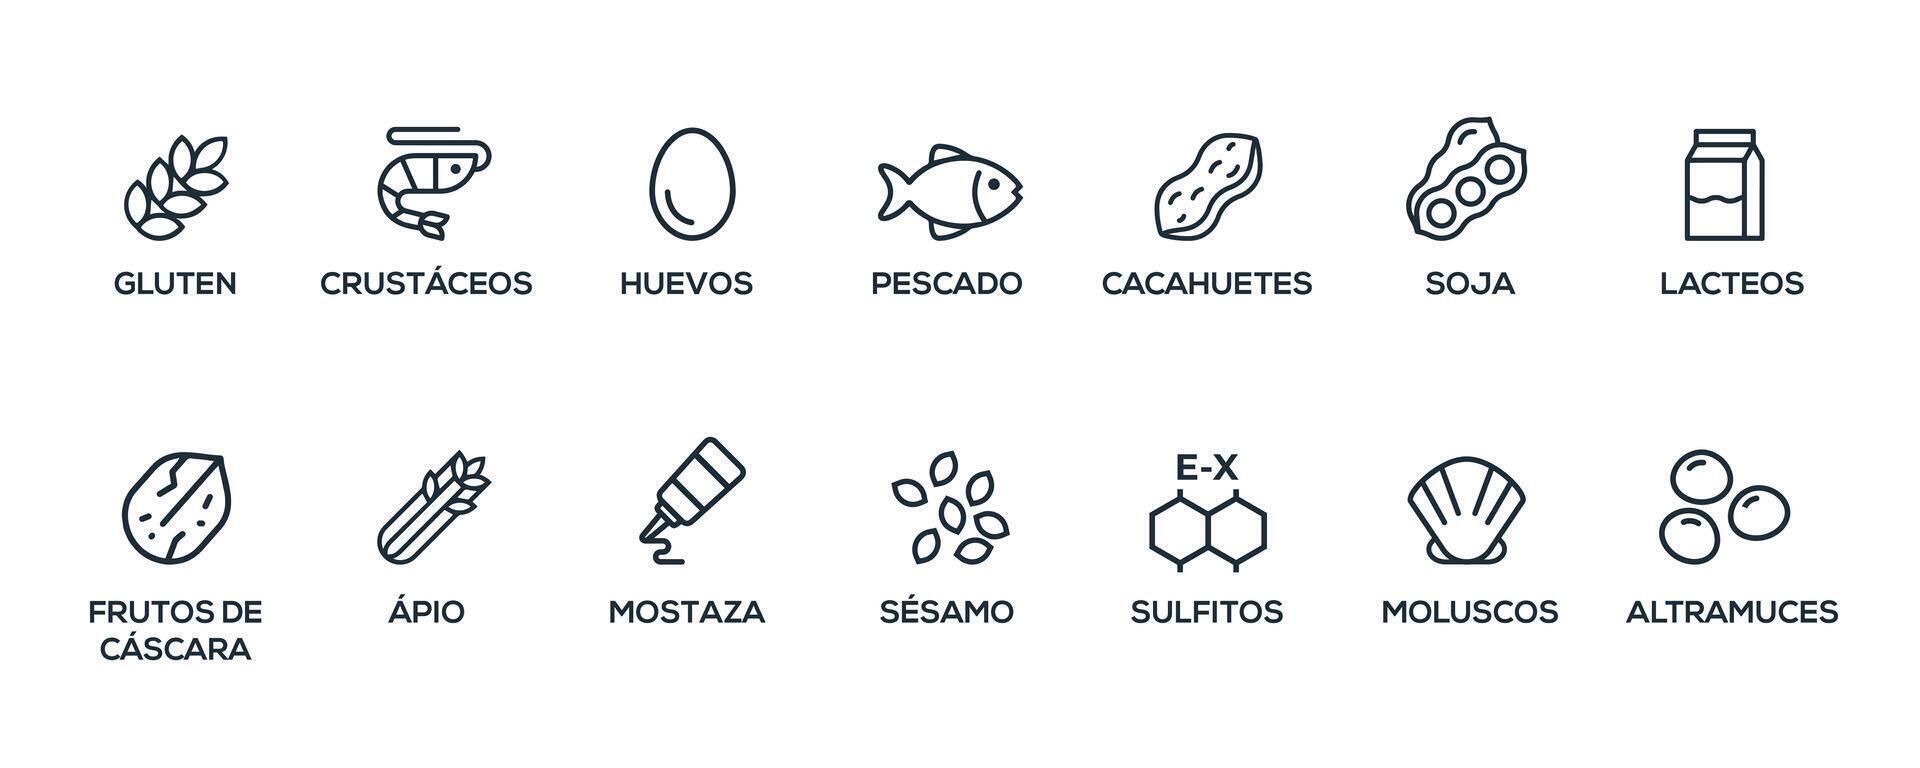 gemakkelijk geïsoleerd vector logo reeks insigne ingrediënt waarschuwing label. zwart en wit allergenen pictogrammen. voedsel onverdraagzaamheid. de 14 allergenen verplicht naar verklaren geschreven in Spaans